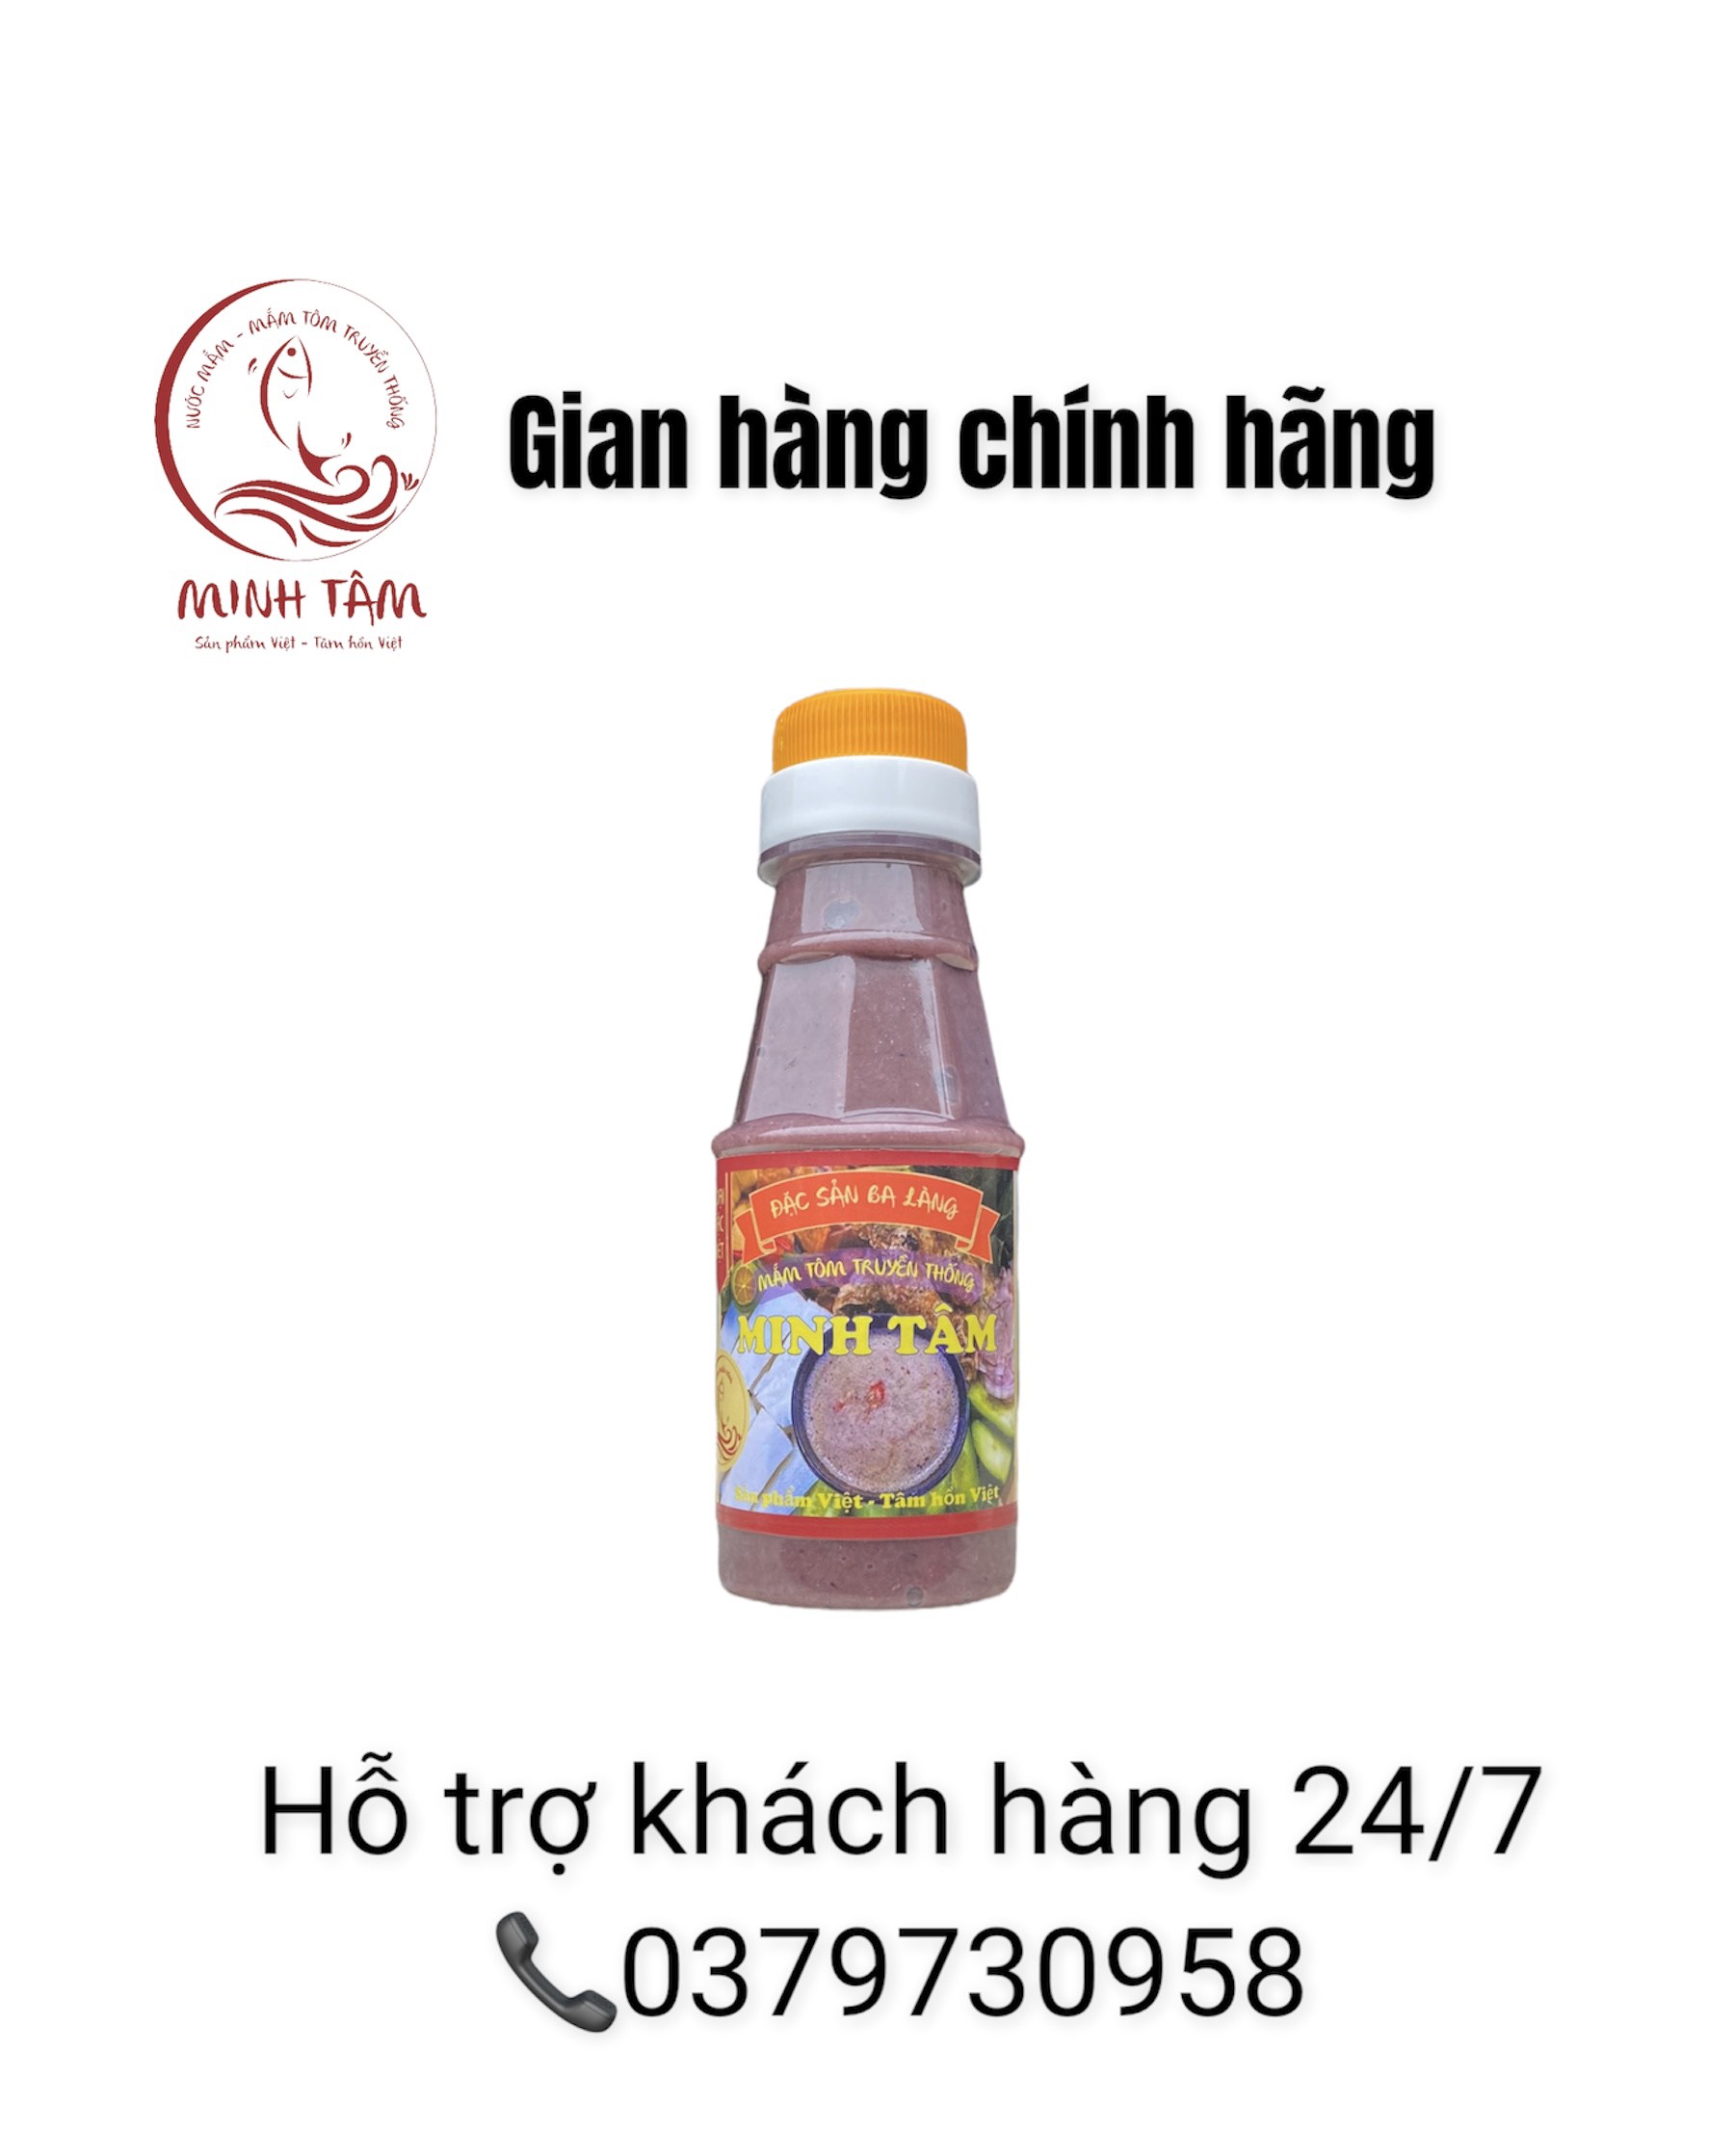 Mắm tôm Minh Tâm - đặc sản Ba Làng Thanh Hoá - Loại 1, chai 100Gram thumbnail